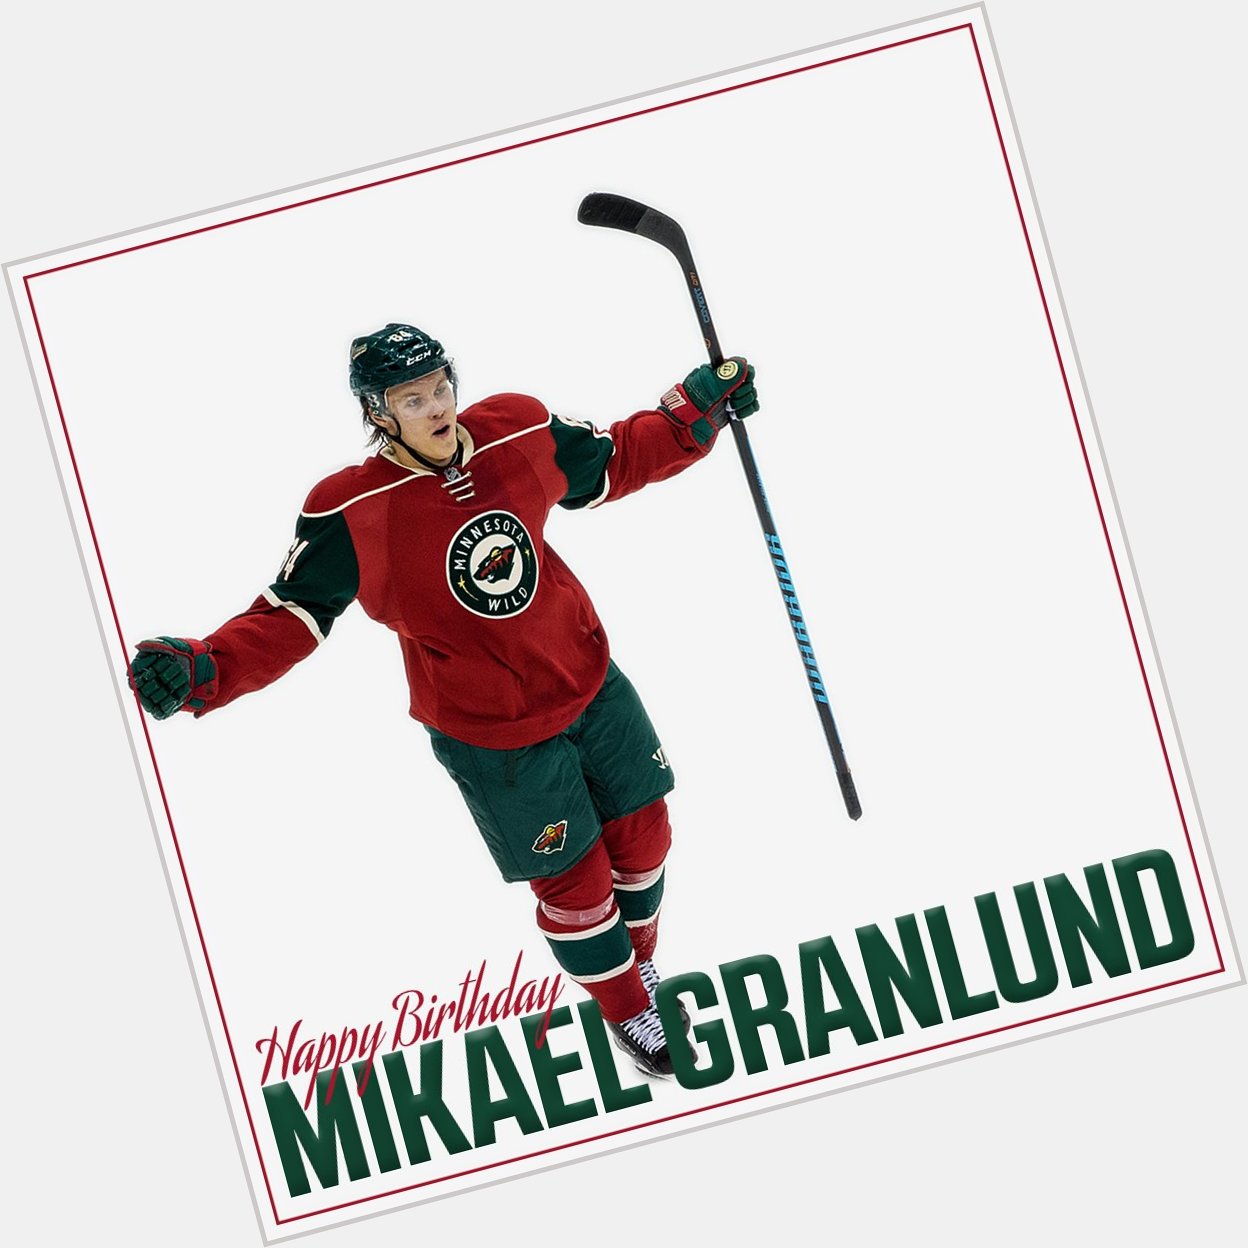 Hyvää syntymäpäivää! Help us wish a Happy Birthday to Mikael Granlund in Finnish, English or BOTH! + + + ! 